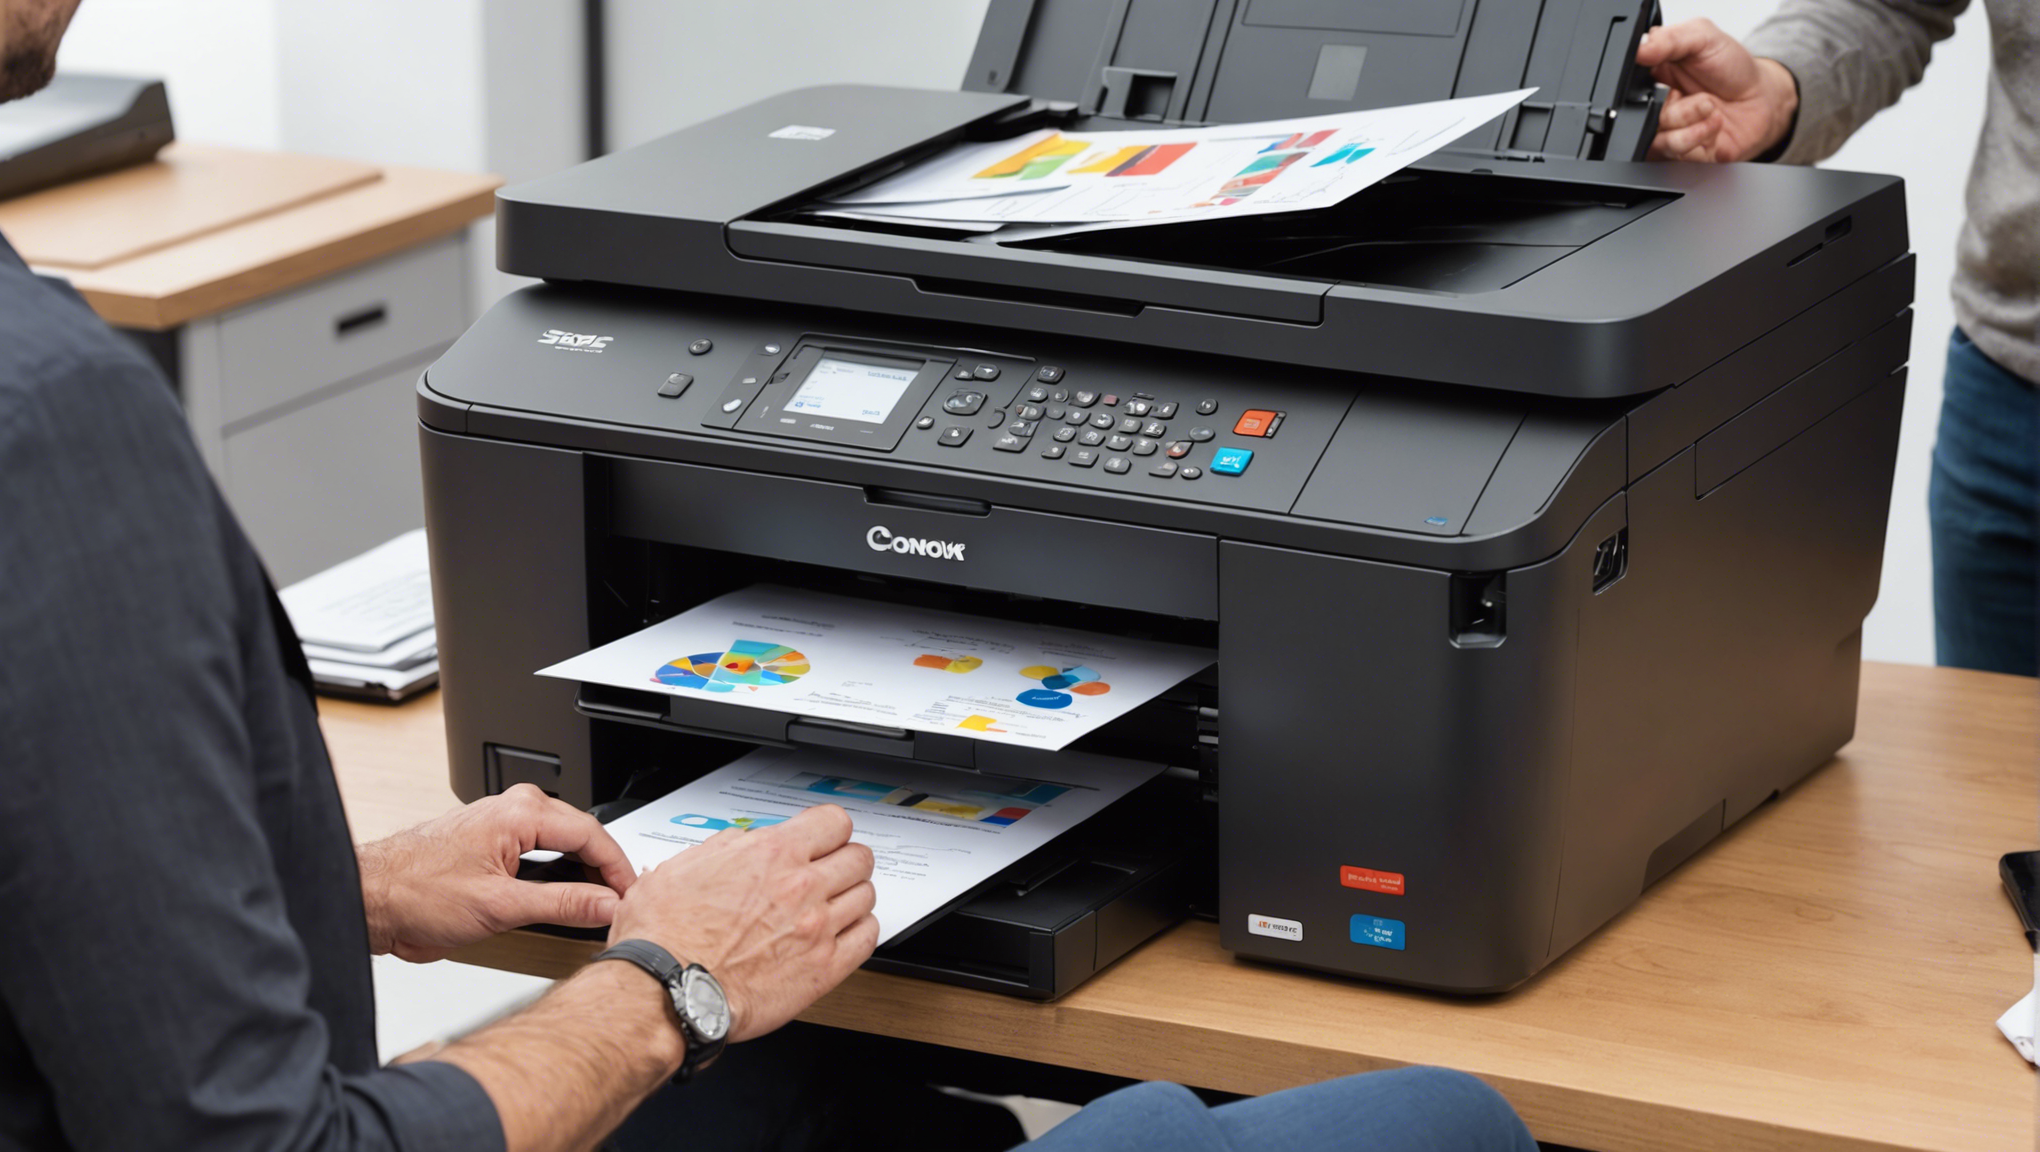 découvrez nos services d'entretien pour imprimantes professionnelles à prix abordables. confiez la maintenance de vos imprimantes professionnelles à des experts pour une performance optimale.